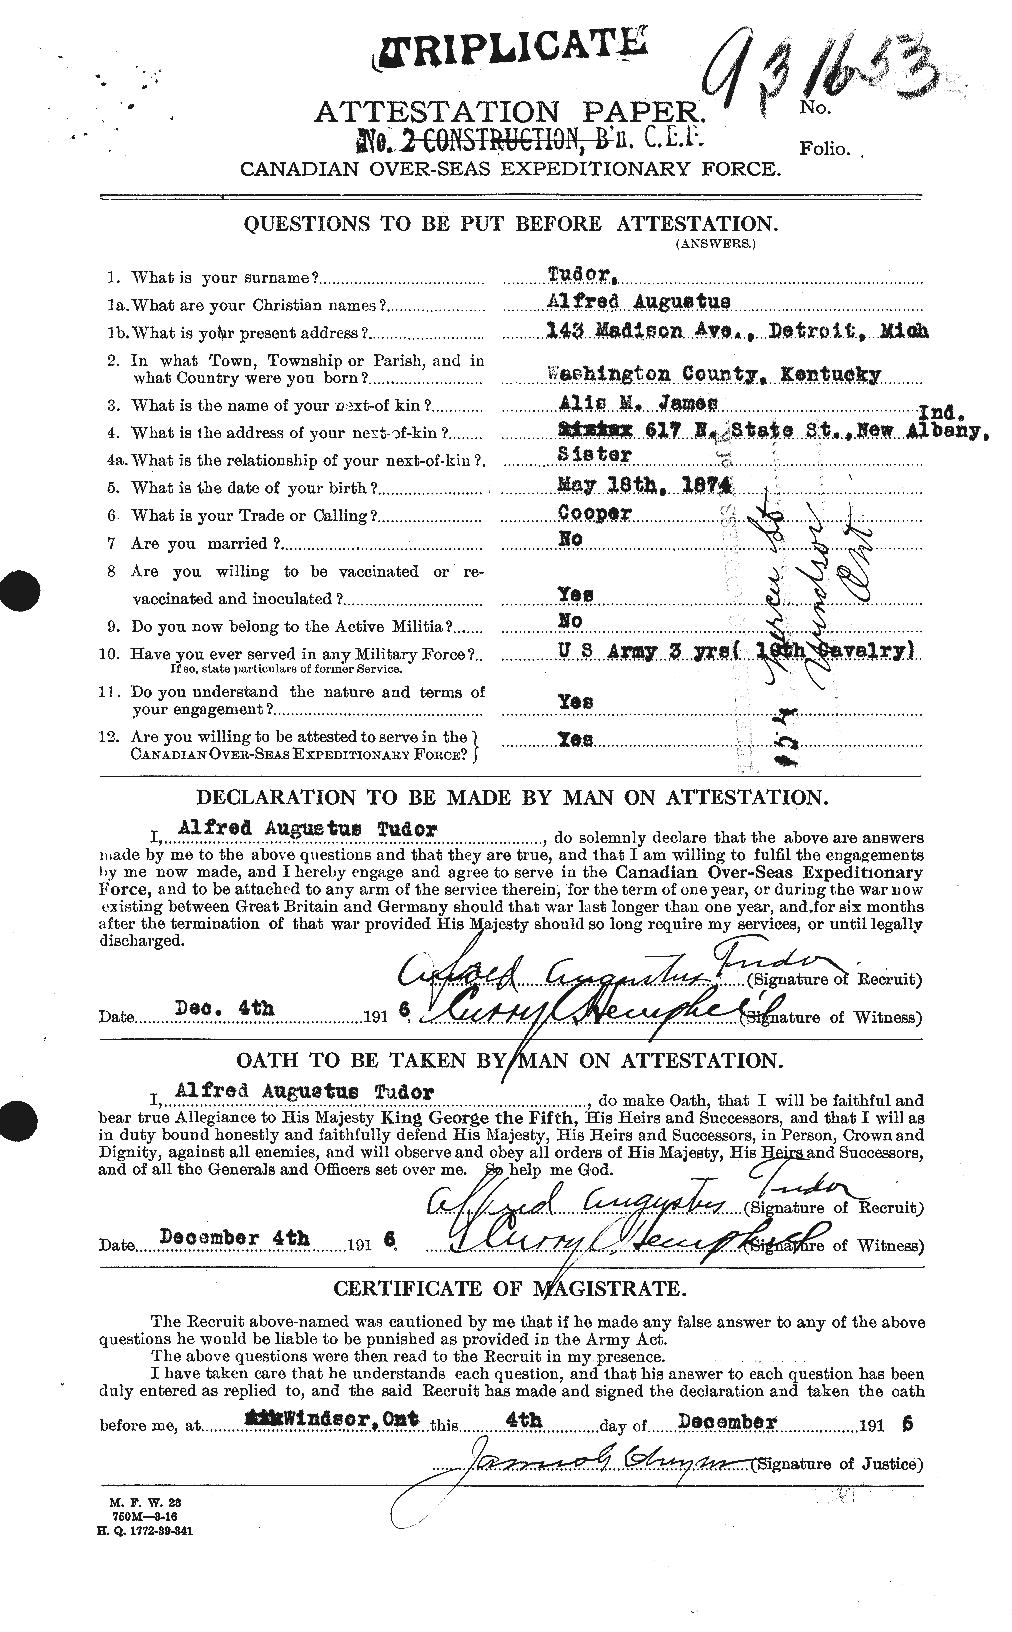 Dossiers du Personnel de la Première Guerre mondiale - CEC 642946a